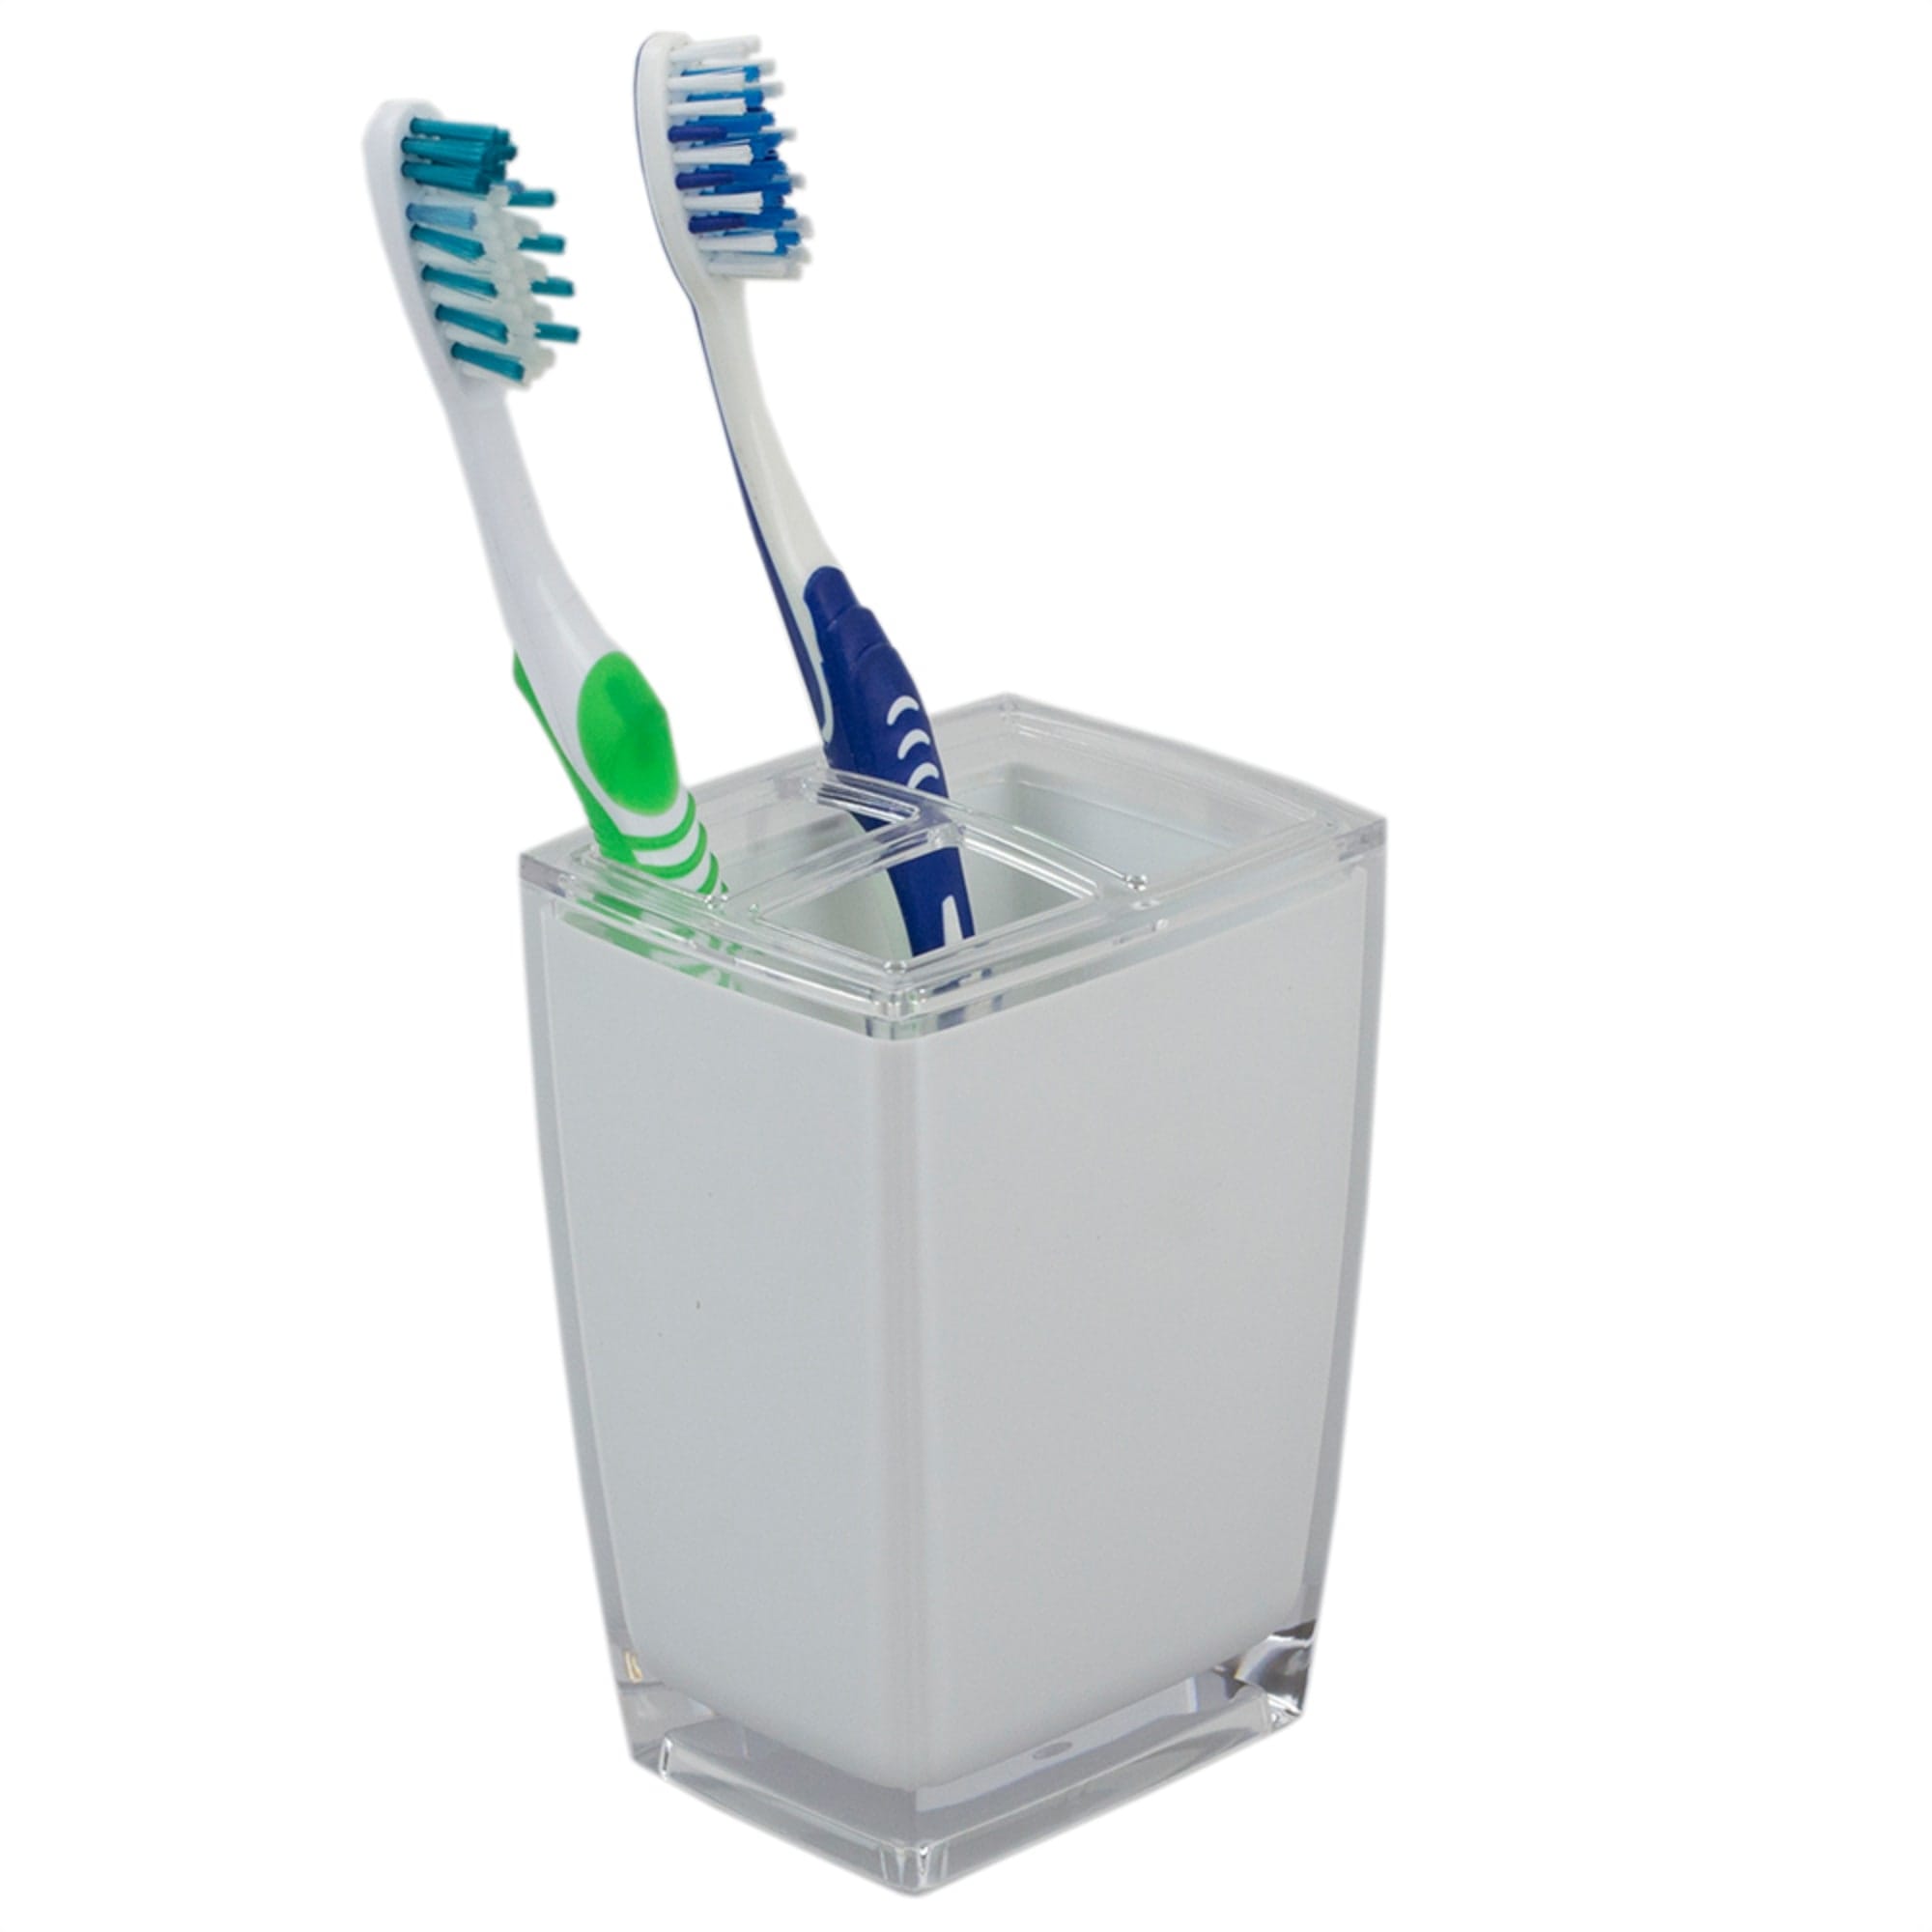 Home Basics Break-Resistant Plastic Toothbrush Holder, White $3.00 EACH, CASE PACK OF 24